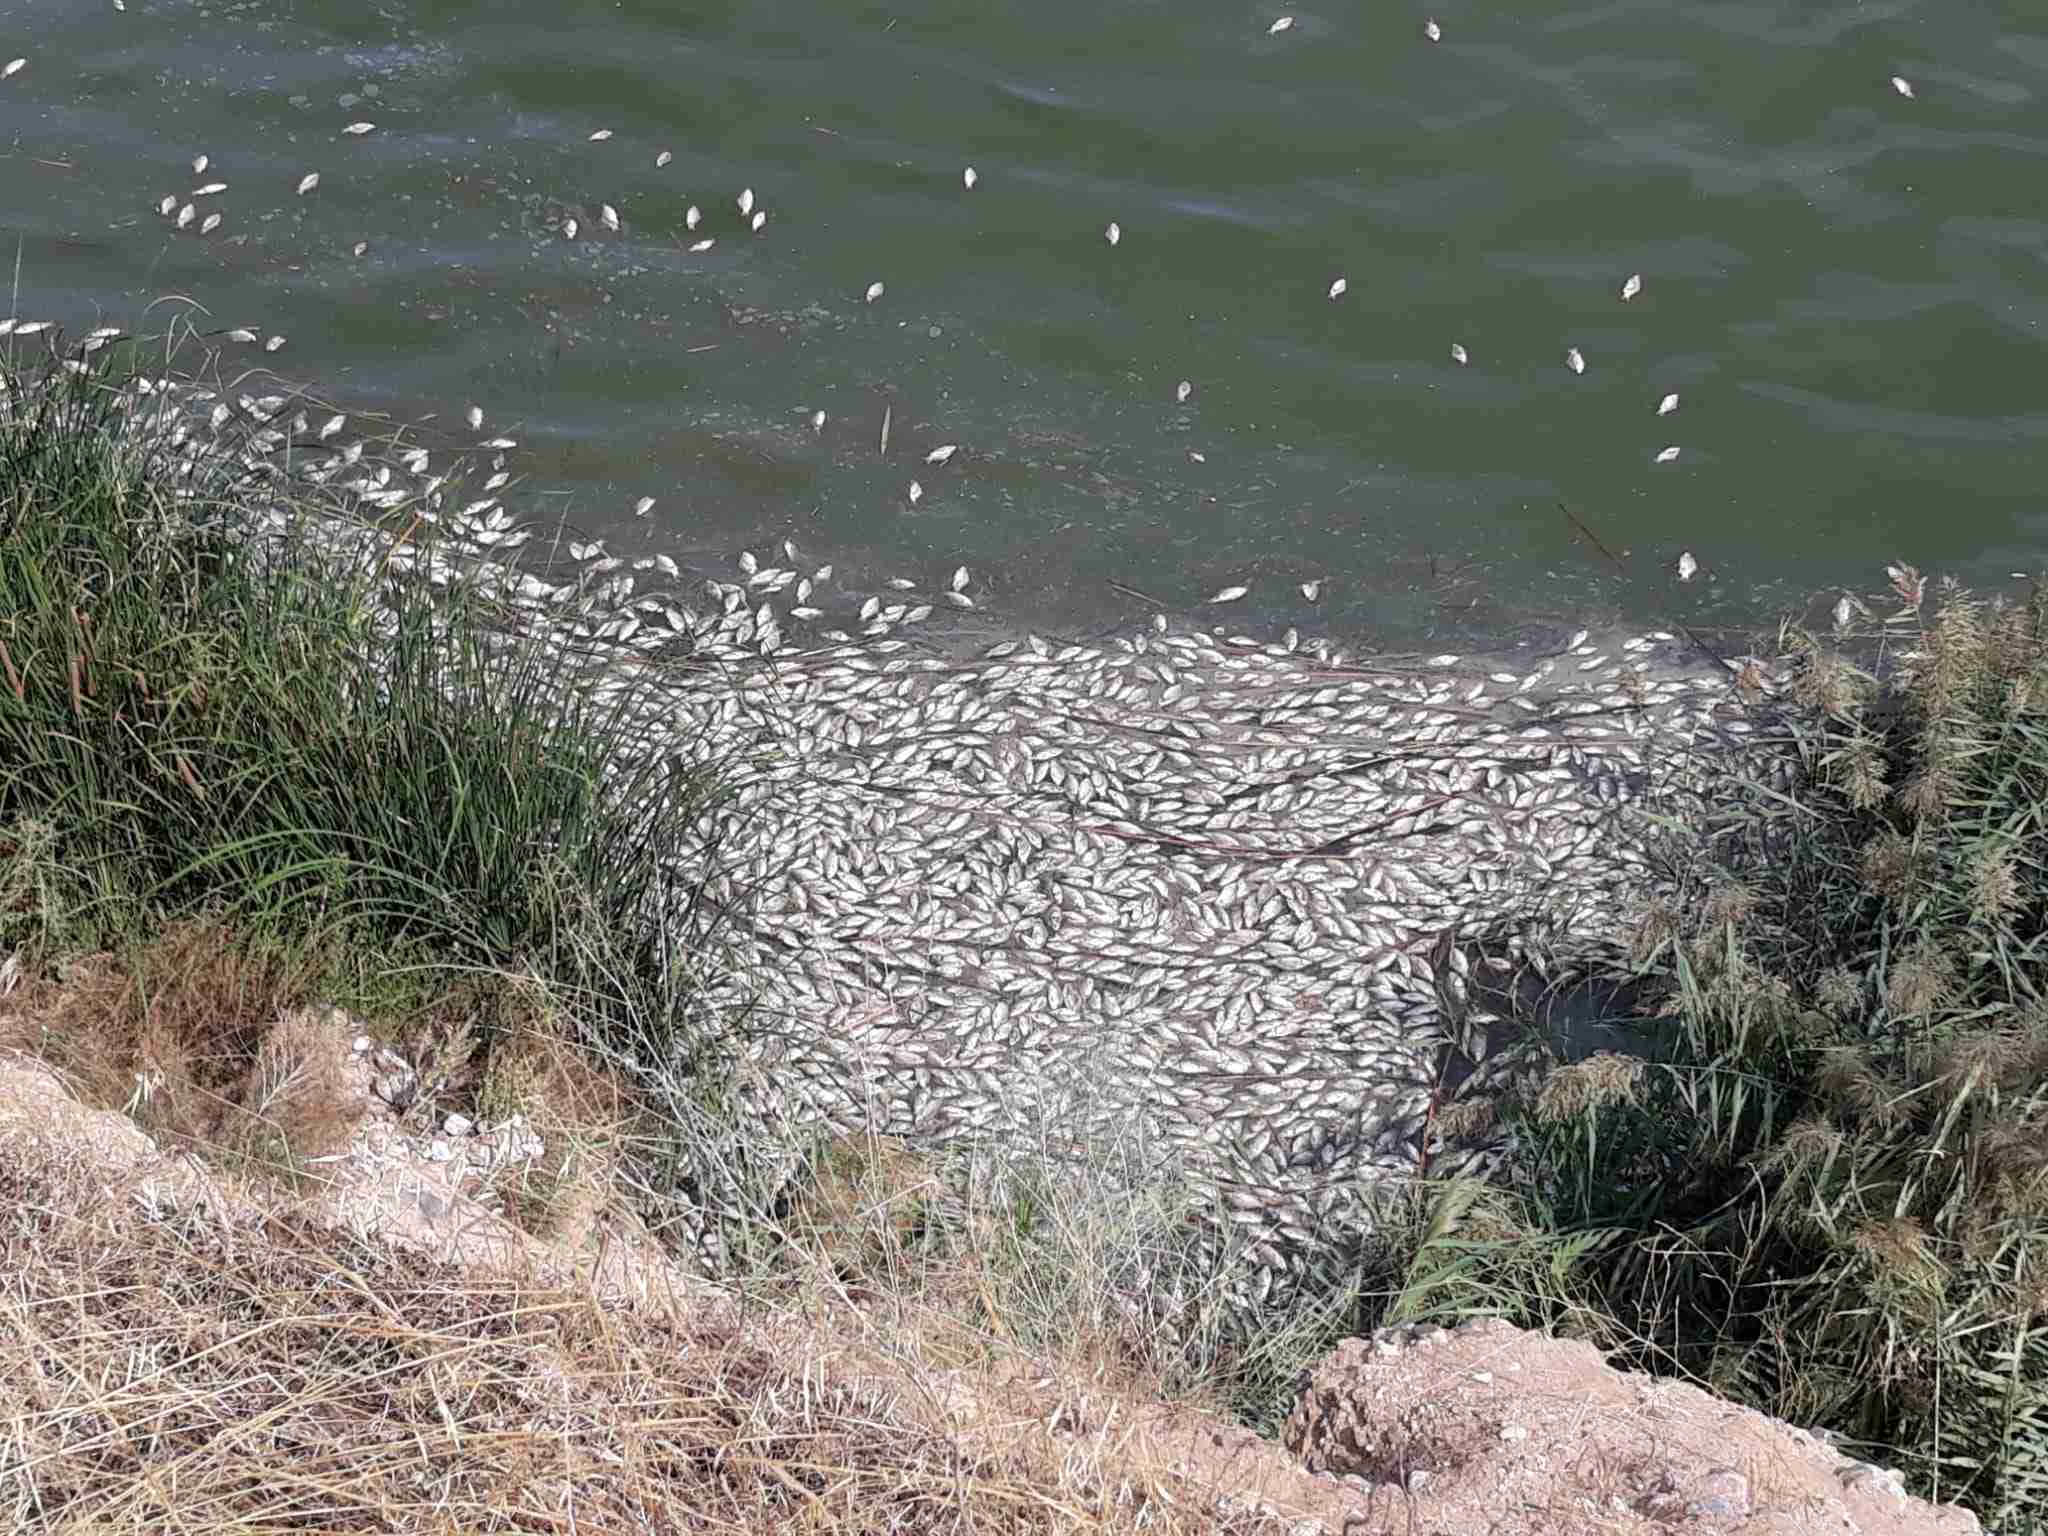 Ecologistas en acción Toledo denuncian una gran mortandad de peces en el Tajo 1